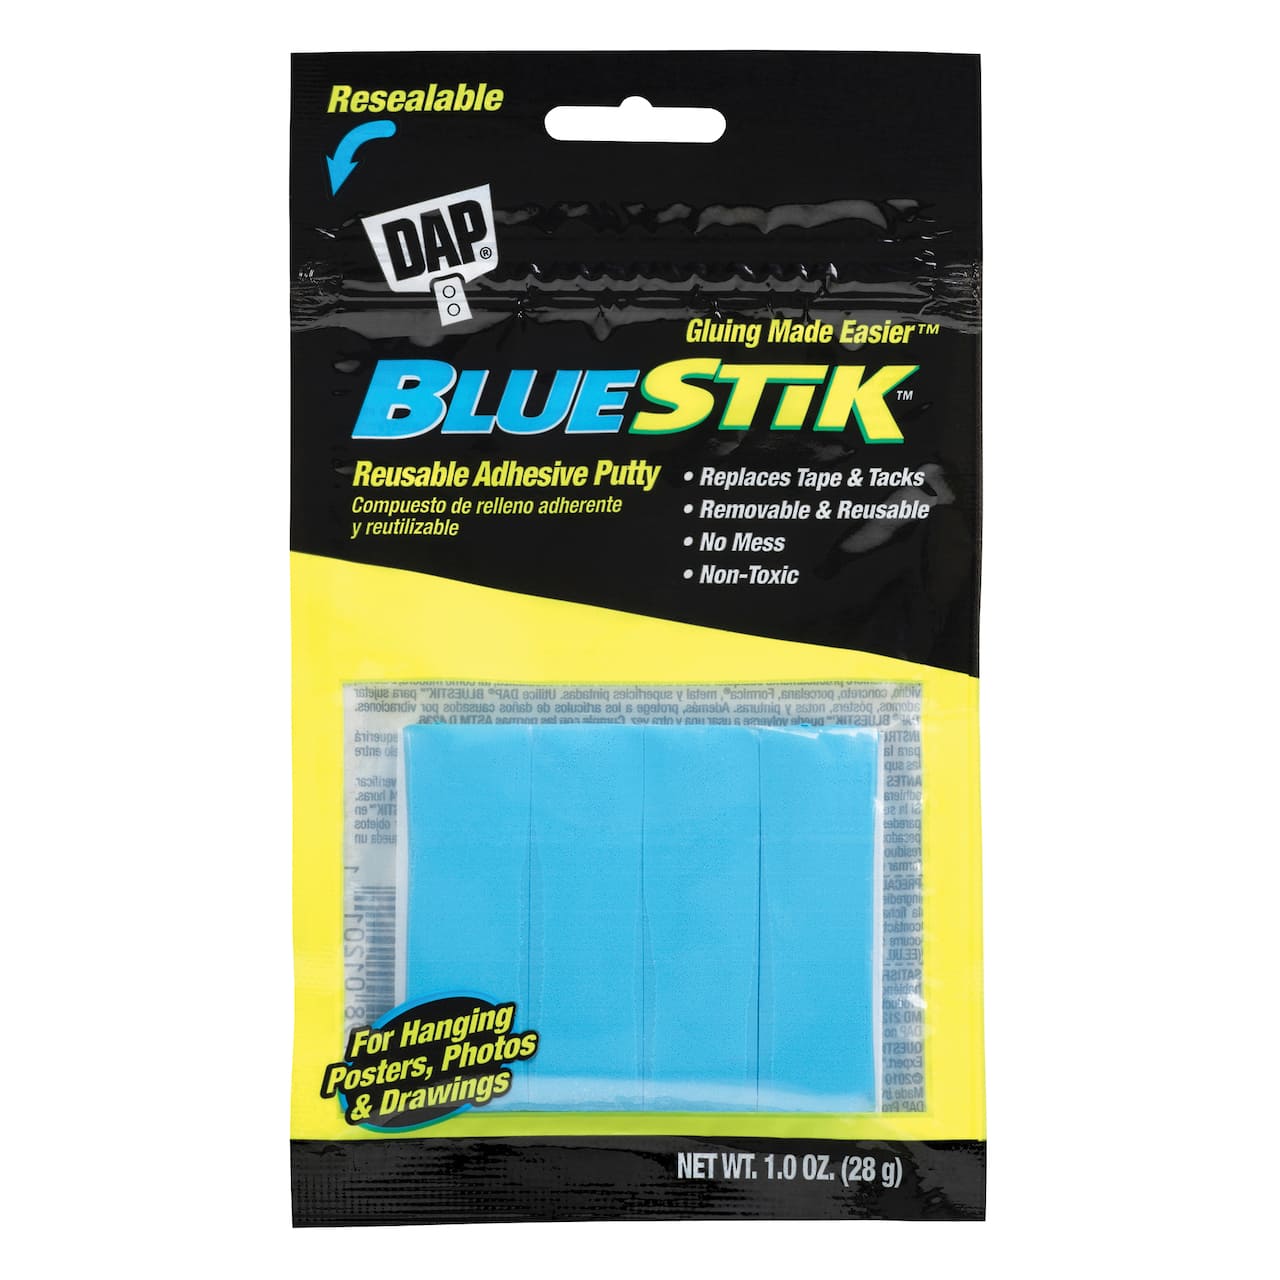 DAP® BlueStik™ 1oz Reusable Adhesive Putty, 12 Pack